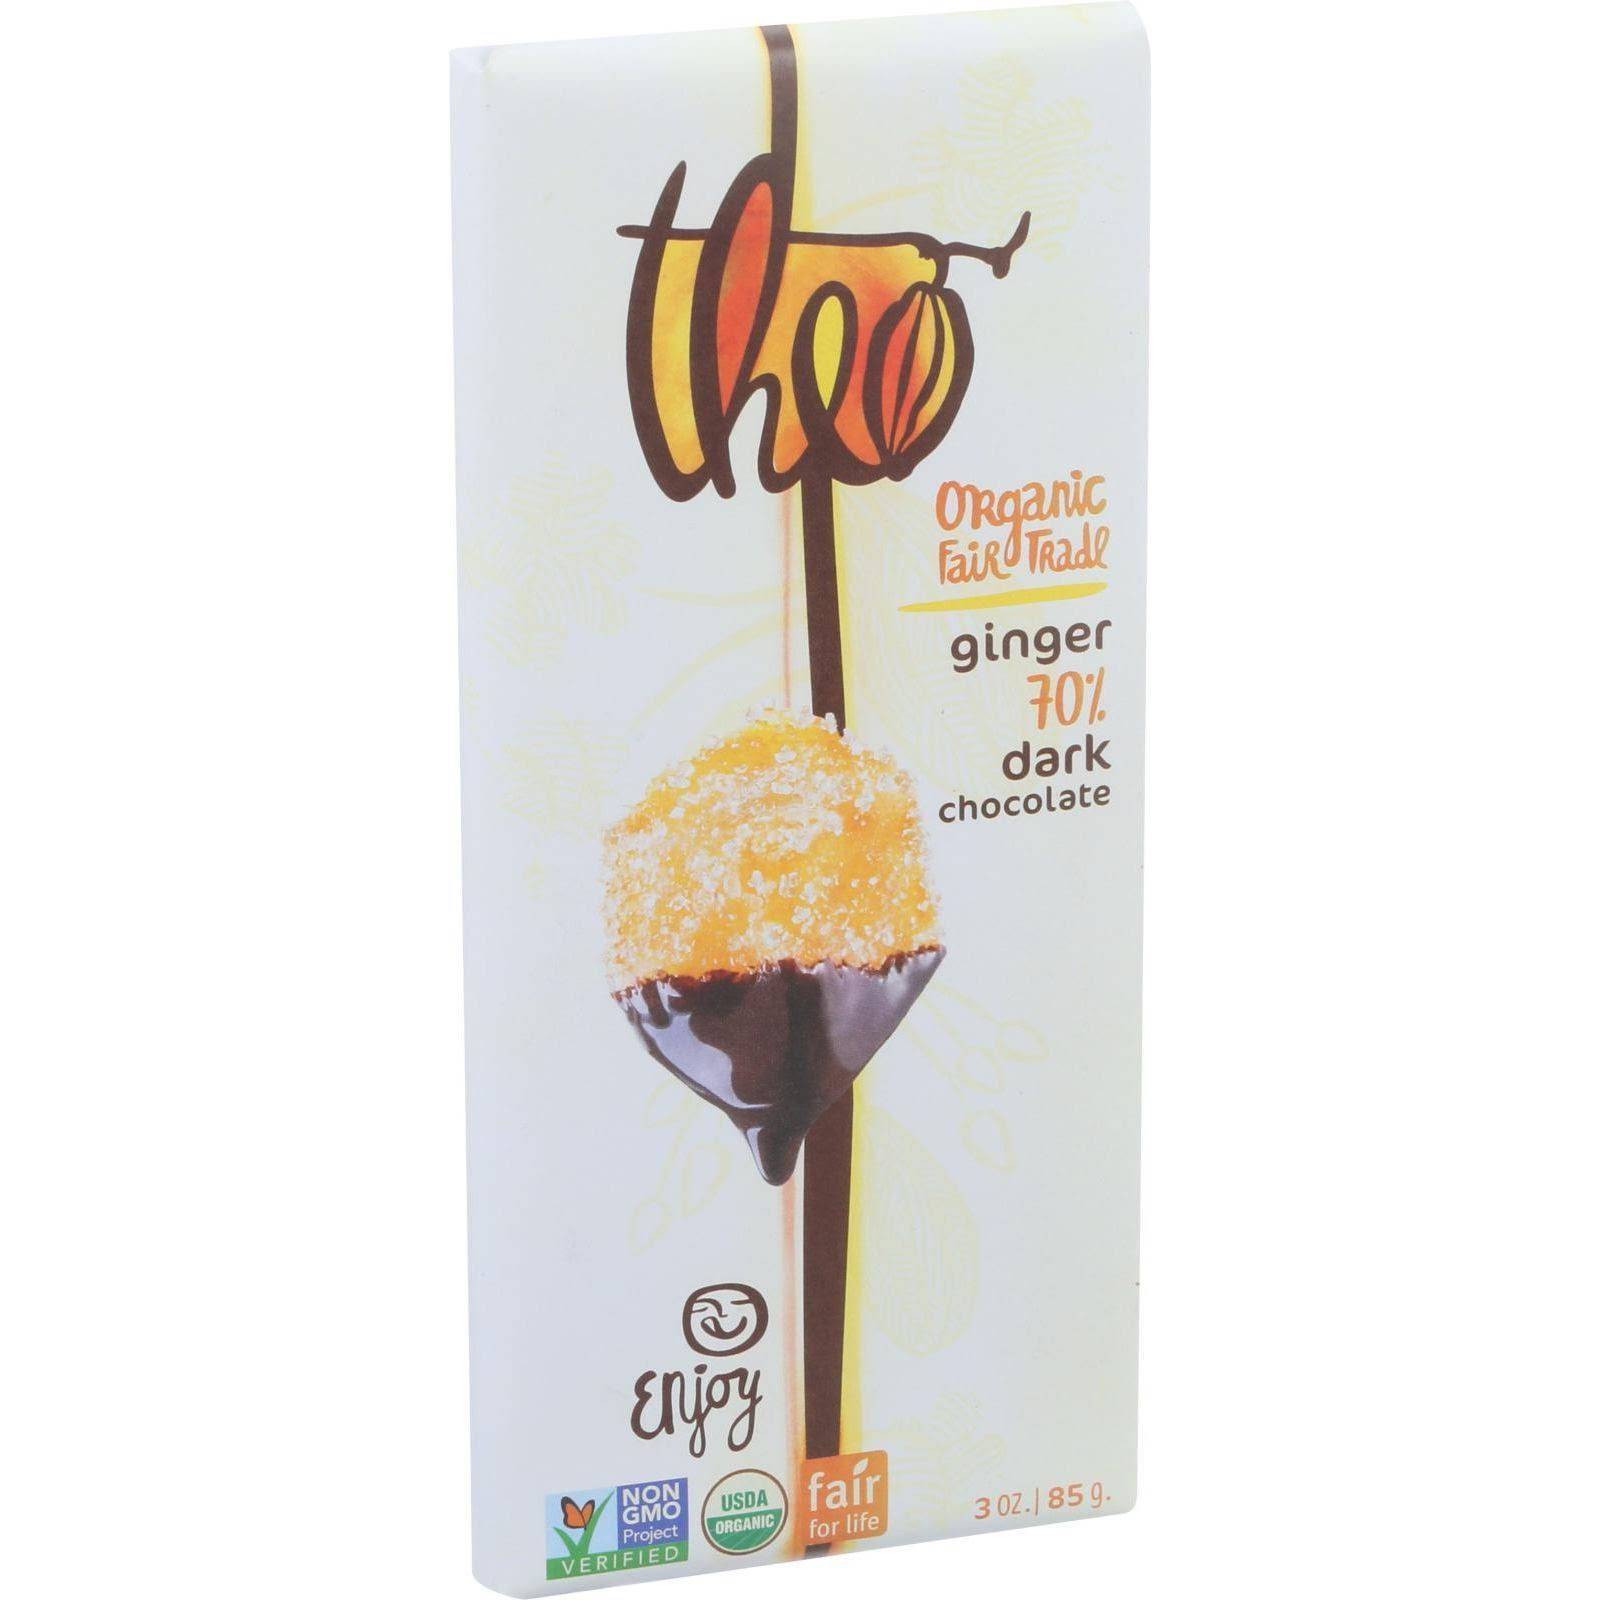 Theo Chocolate Organic 70% Dark Chocolate Bar - Ginger, 85g